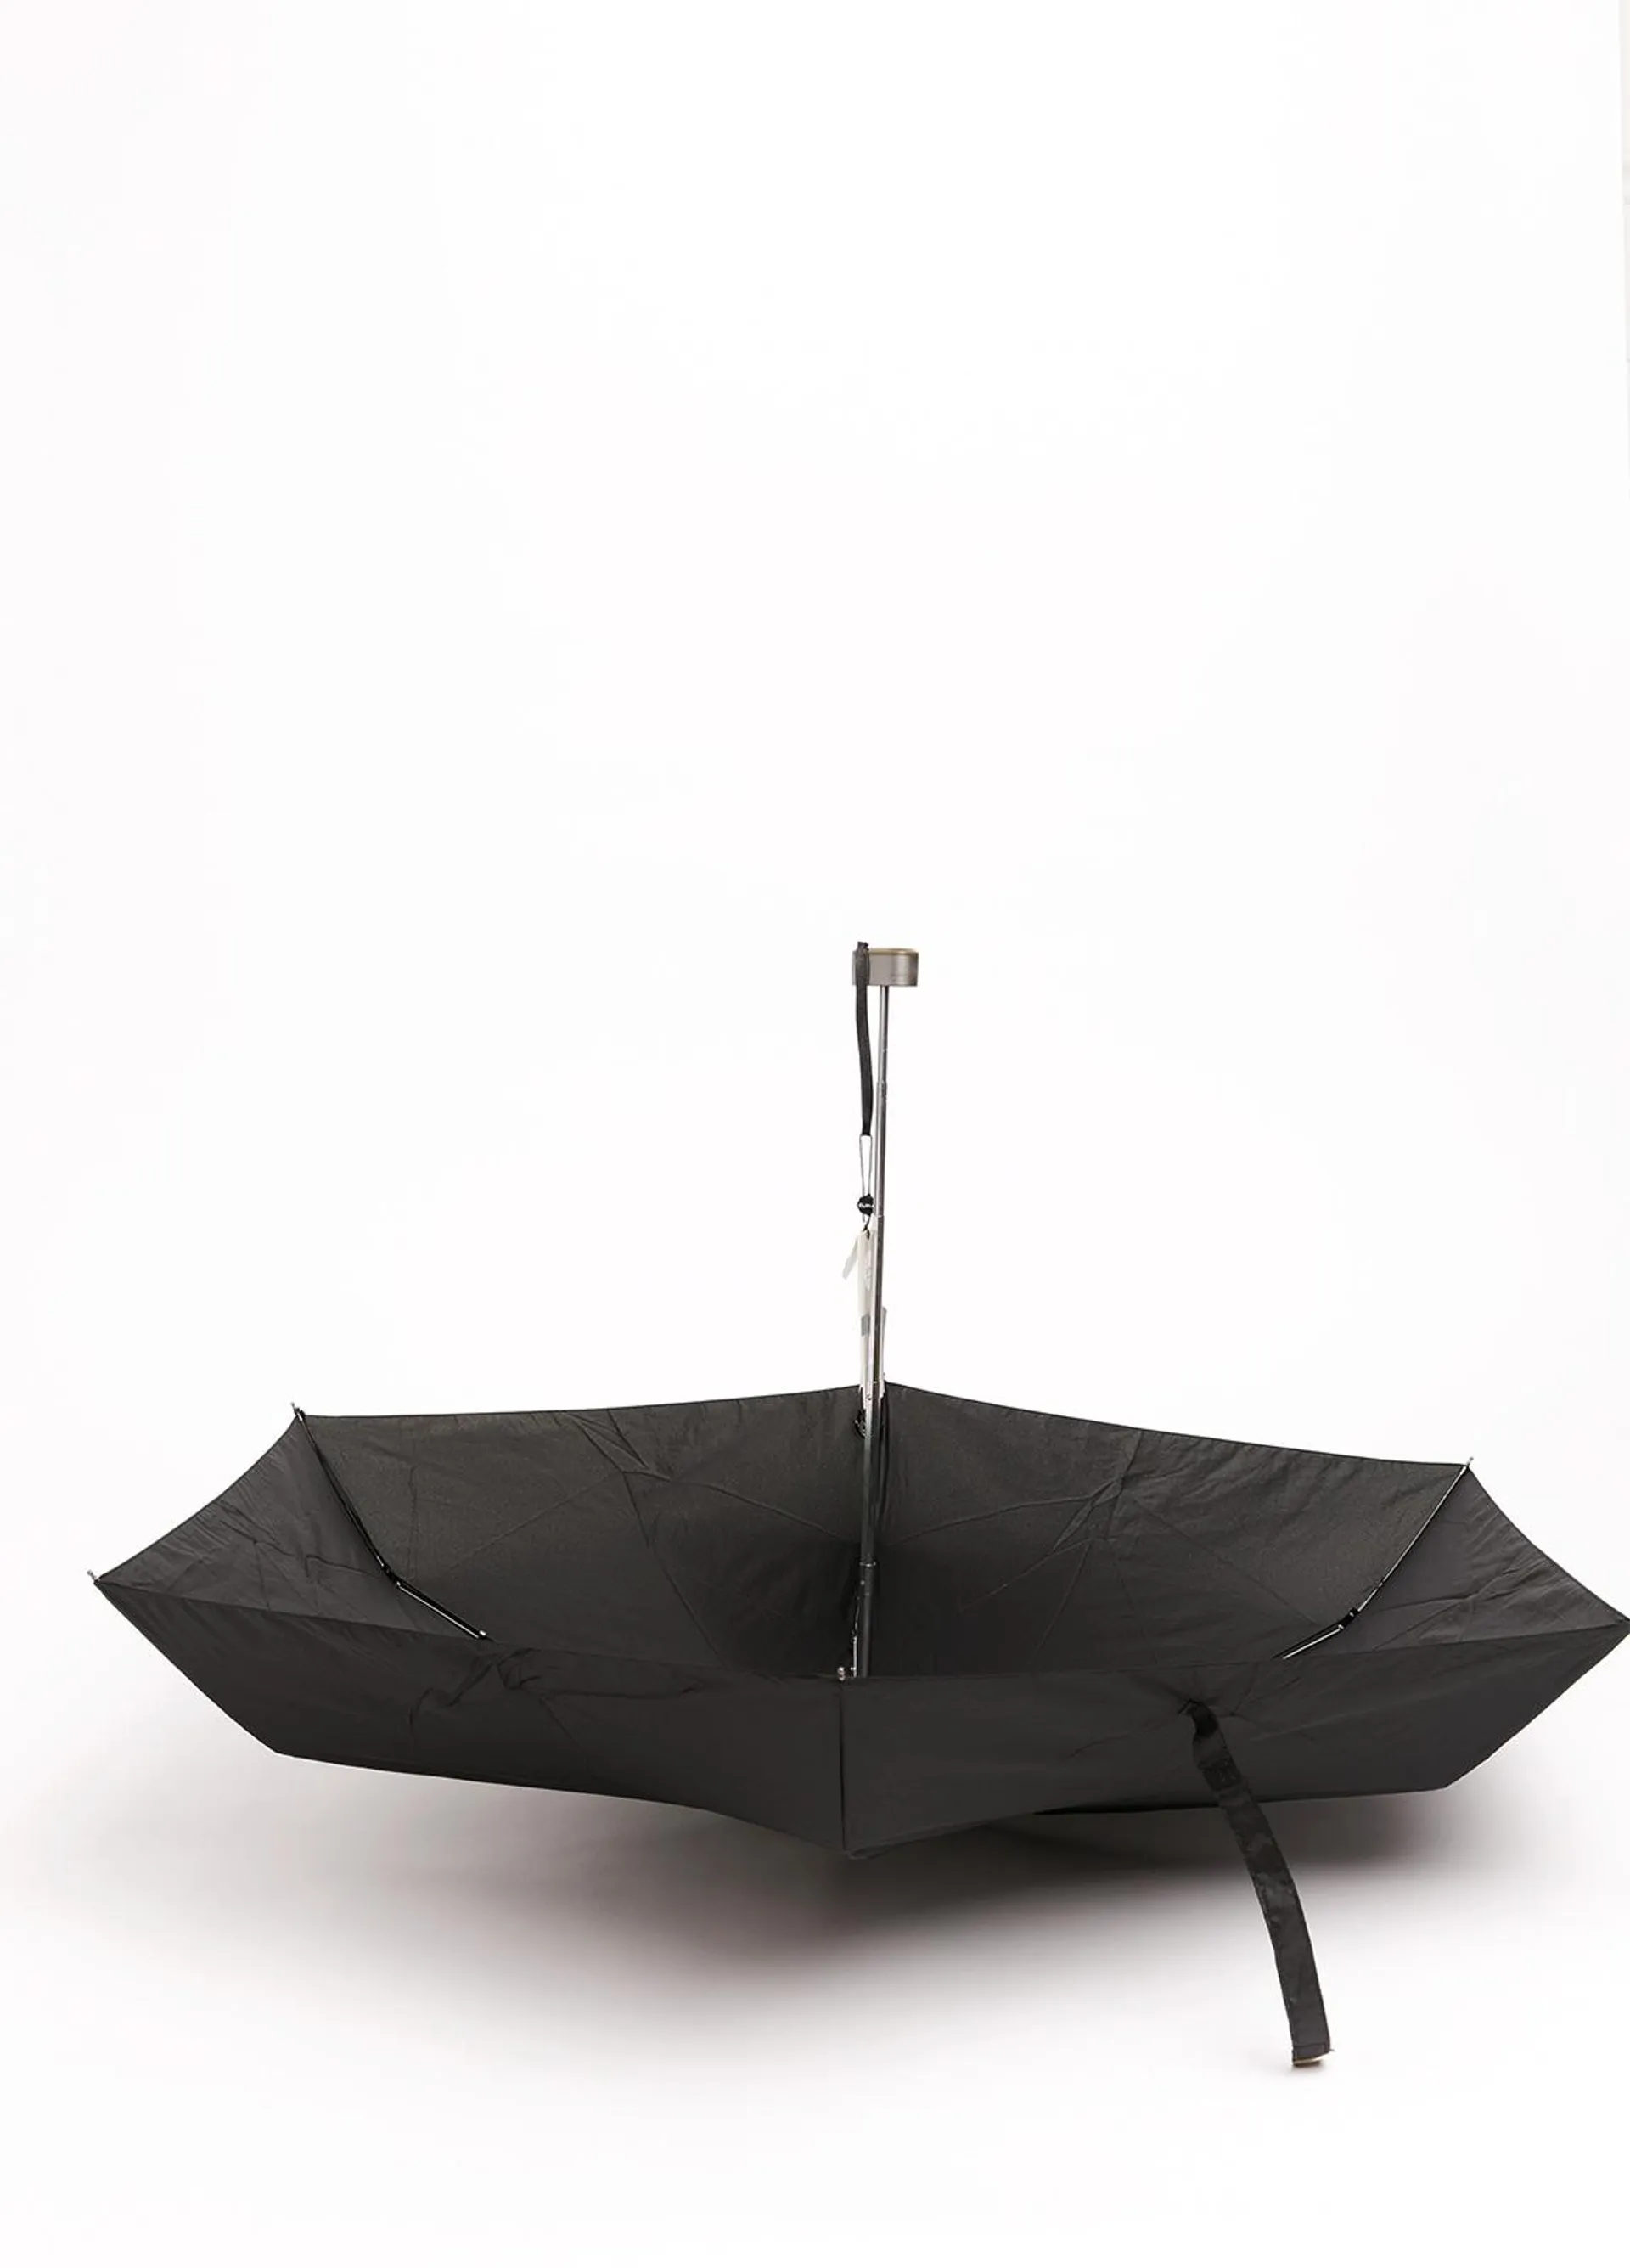 Paraguas FUREST COLECCIÓN ultra compacto negro.